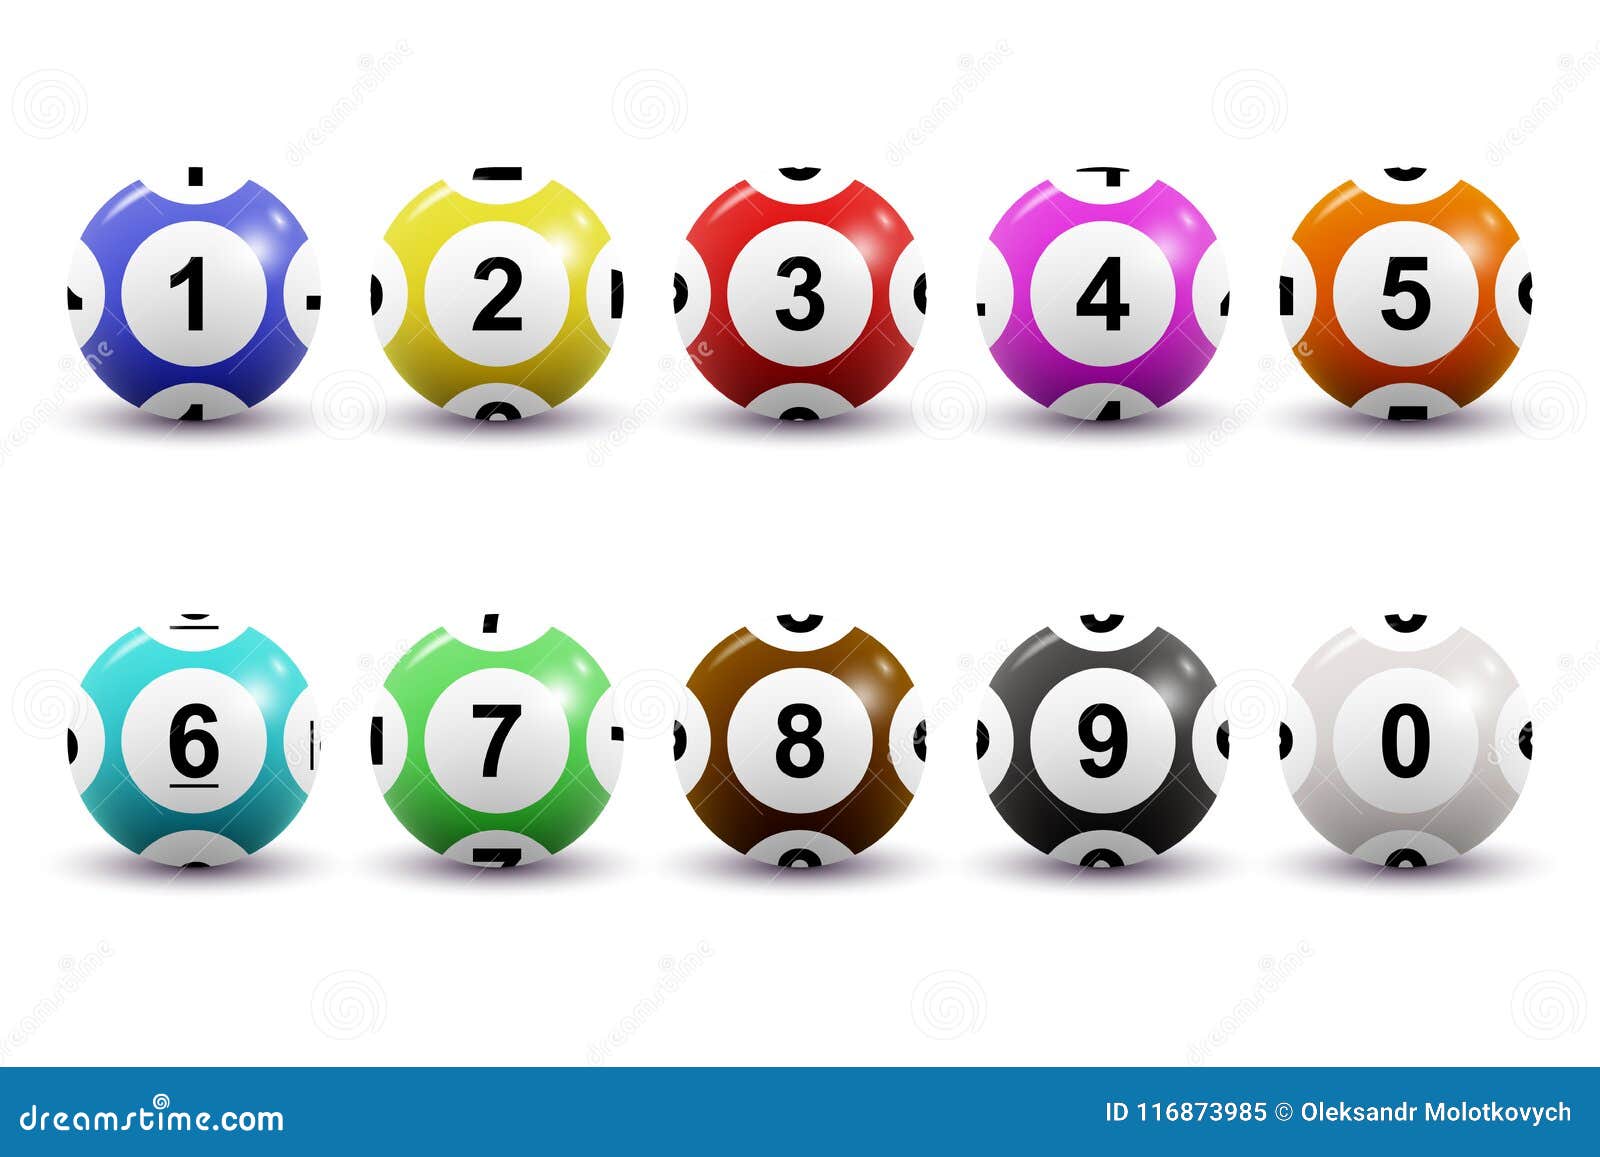 100 Peças Bolas De Pong Numeradas Jogos De Bingo Bolas De Loteria Com  Números Bola De Jogo Colorida Treino Tênis De Mesa Desenhar Bolas Mini  Eletrônico Filho Bola De Loteria : 